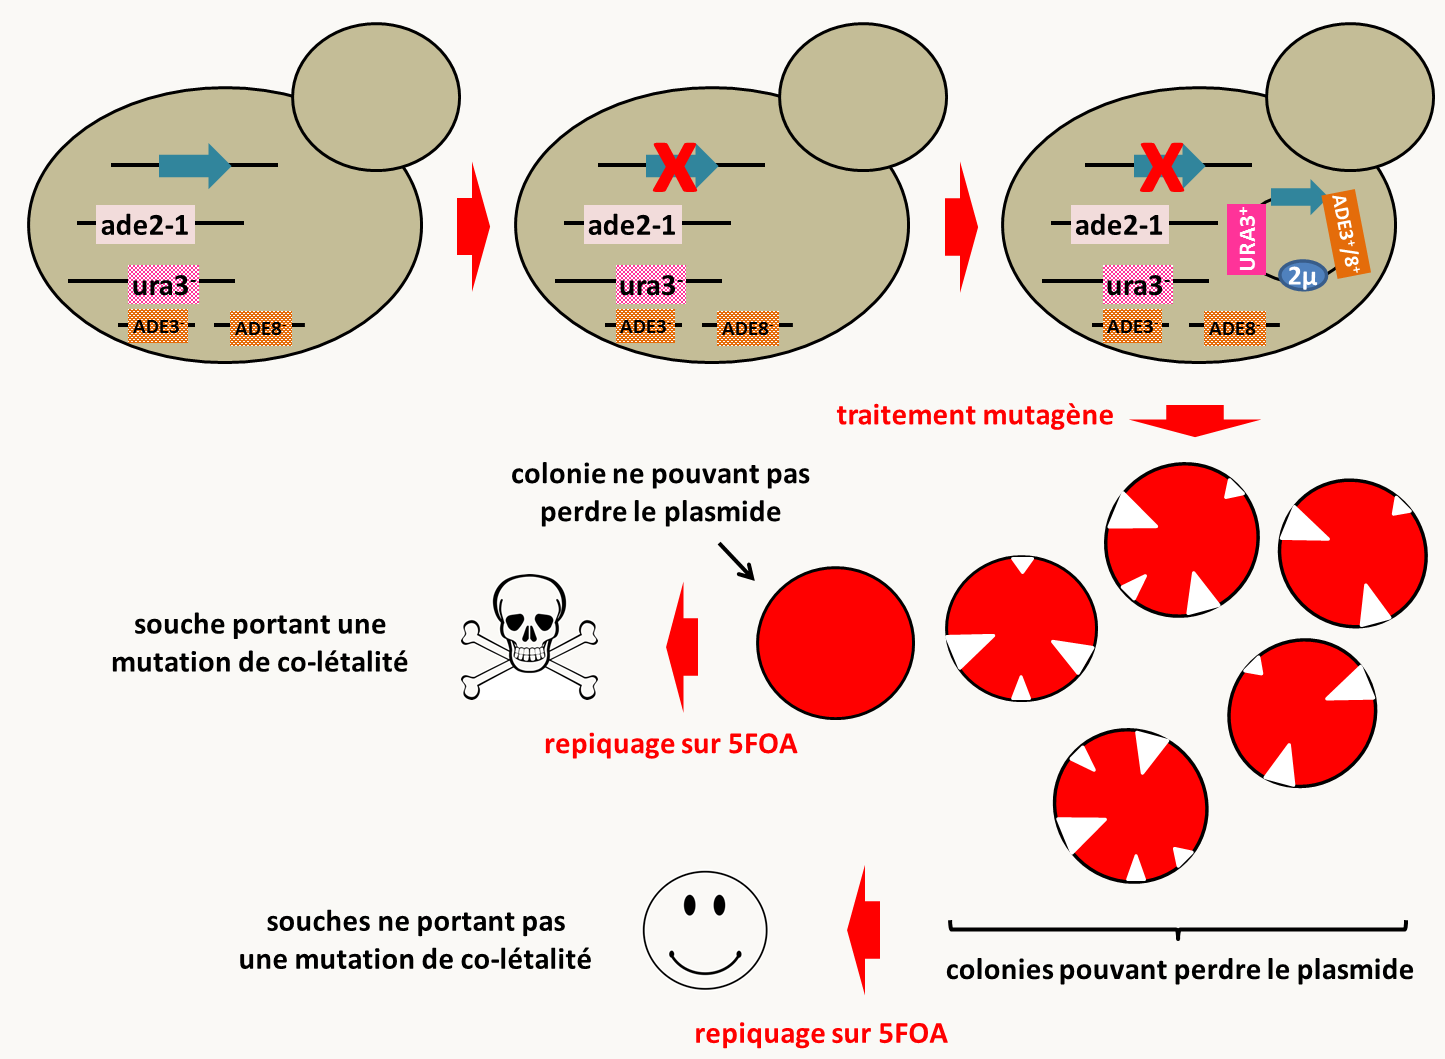 stratégie de recherche de co-létaux chez Saccharomyces cerevisiae. La souche de départ porte des mutations dans les gènes ADE2, ADE3 et ADE8, ce qui lui confère une couleur blanche car le pigment rouge qui s'accumule dans les mutants ADE2<sup>-</sup> n'est pas produit. En effet, les gènes ADE3 et ADE8 codent pour des enzymes agissant en amont de l'enzyme codé par le gène ADE2; c'est le substrat de l'enzyme codé par ADE2 qui est transformé en métabolite rouge. Cette souche est aussi mutée pour le gène URA3 qui va servir de marqueur de sélection pour introduire un plasmide et permettre une contre-sélection pour vérifier la présence d'une mutation co-létale. Dans cette souche est introduite la mutation pour laquelle on souhaite obtenir des mutations co-létales (croix rouge). Puis, un plasmide portant les allèles sauvages des gènes ADE3, ADE8 et URA3, ainsi que l'allèle sauvage du gène qui porte dans le génome la mutation pour laquelle on souhaite trouver des mutations co-létales est introduit par transformation en sélectionnant les transformants devenu prototrophes pour l'uracile. Cette souche est rouge (car le pigment rouge caractéristique des souches mutantes pour ADE2 est fabriqué) mais va présenter de nombreux secteurs blanc indicatif de la perte du plasmide, puisque le gène qu'il porte n'est pas essentiel. Après traitement mutagène, les souches ne pouvant plus perdre le plasmide, et donc l'allèle sauvage du gène d'intérêt, ne présenteront donc plus de secteurs blancs. Ce crible positif permet de sélectionner rapidement des candidats porteurs de mutations co-létales. Pour valider la présence d'une mutation co-létale, il suffit de repiquer les candidats sur milieu contenant de l'acide 5-fluoro-orotique (5FOA). En effet, ce produit est métabolisé uniquement dans les souches URA3<sup>+</sup> par l'enzyme codé par le gène URA3; il devient alors toxique. Si le plasmide porteur de l'allèle URA3+ ne peut être perdu, les cellules repiquées mourront, alors que celles ne portant pas de mutations de co-létalité pousseront.